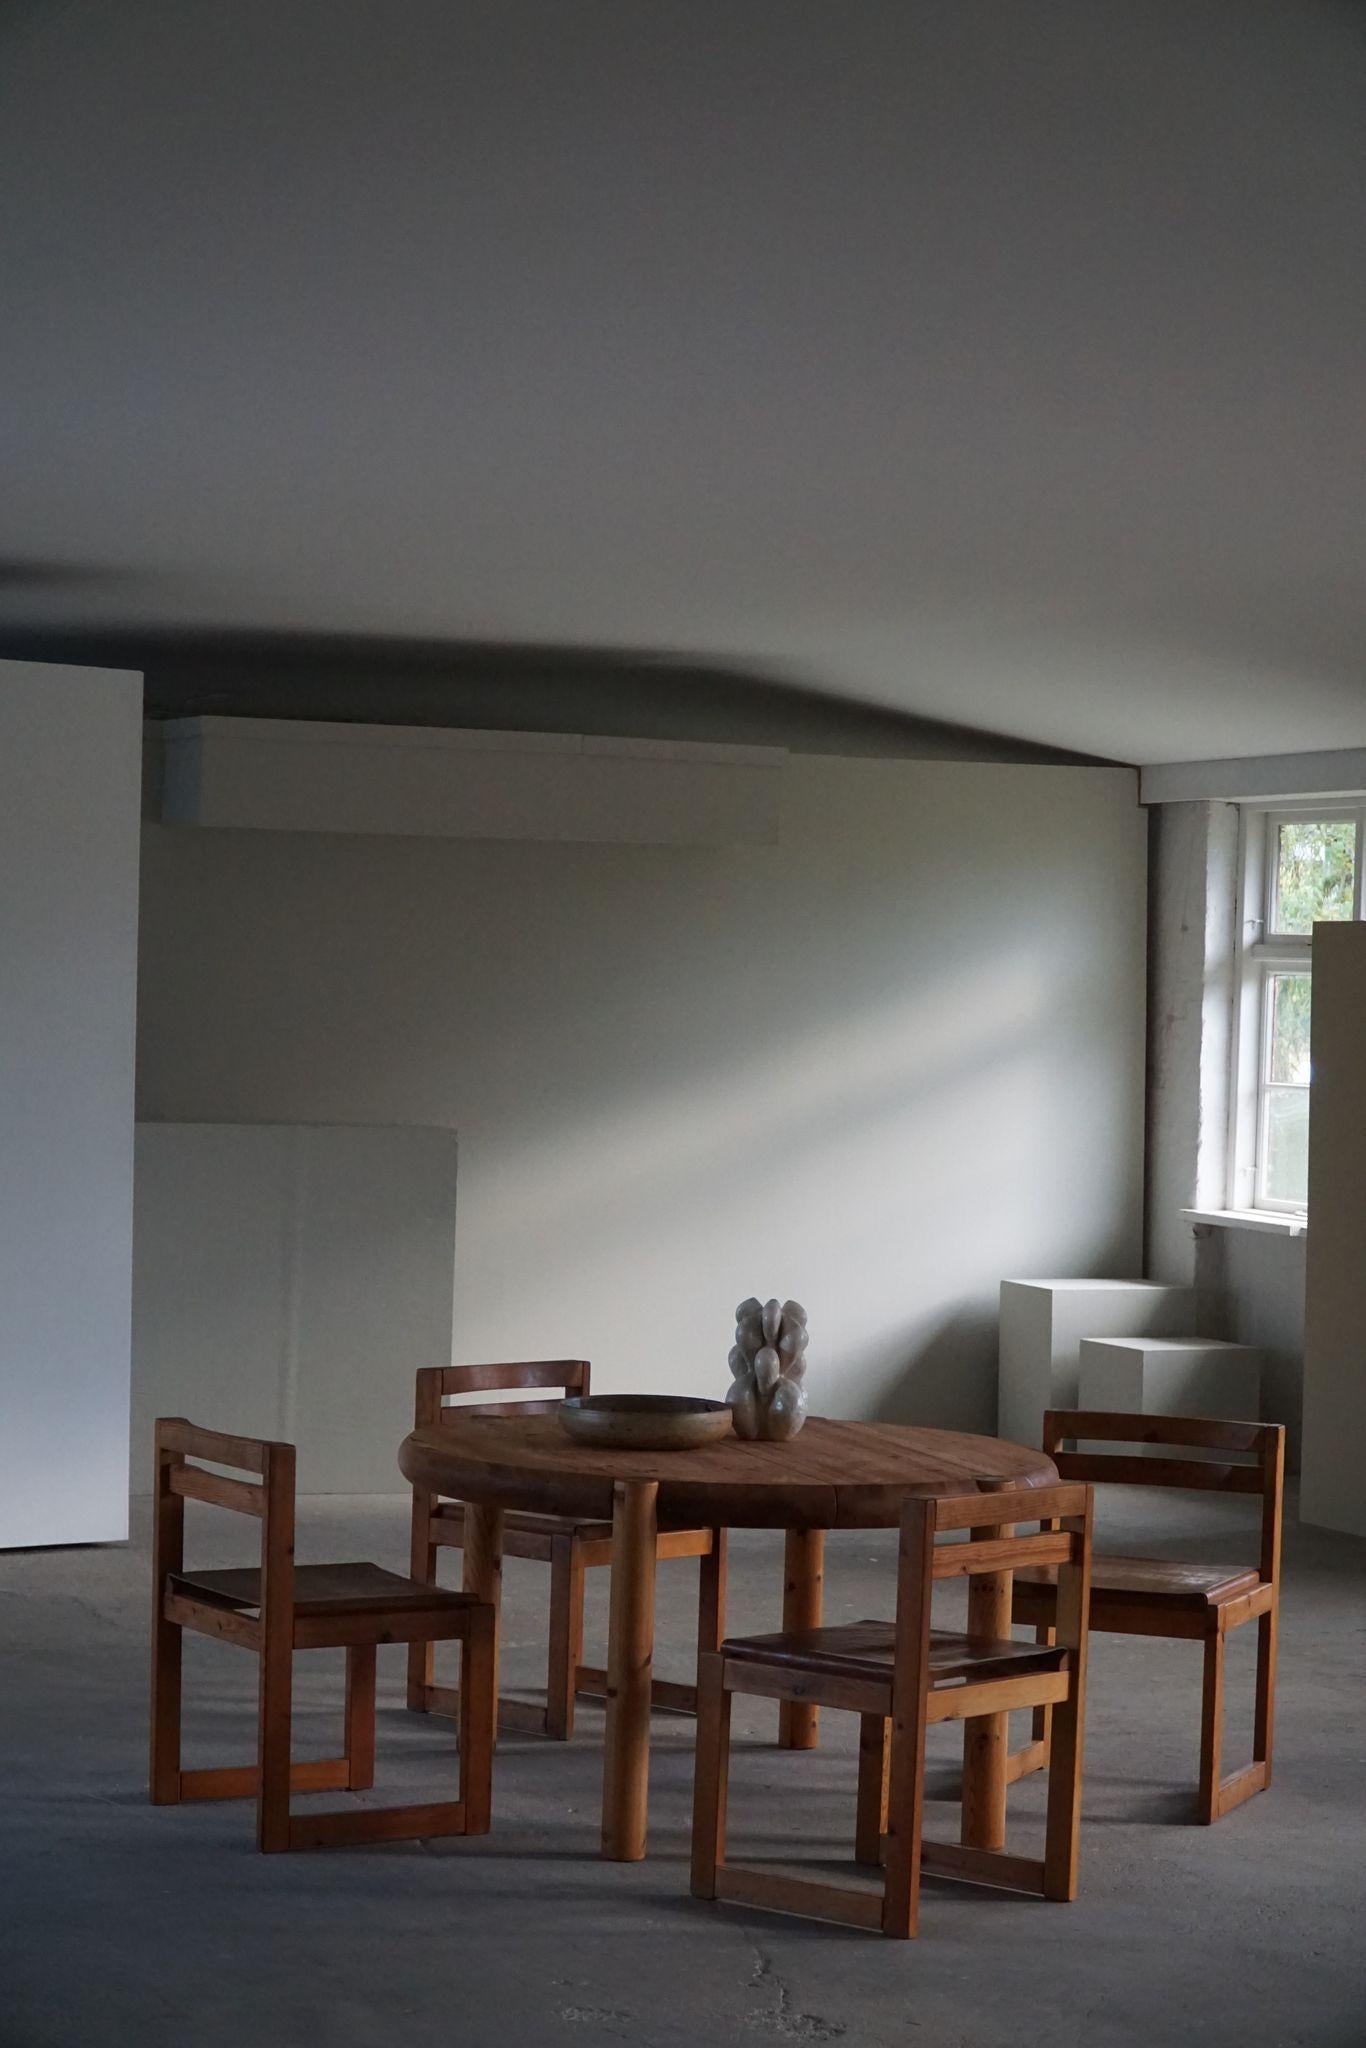 Ensemble de 4 chaises de salle à manger danoises du milieu du siècle dernier, en pin massif et cuir, réalisées par le designer danois Knud Færch pour Sorø Møbelfabrik dans les années 1970. 

Ces chaises de salle à manger modernes s'adaptent à de